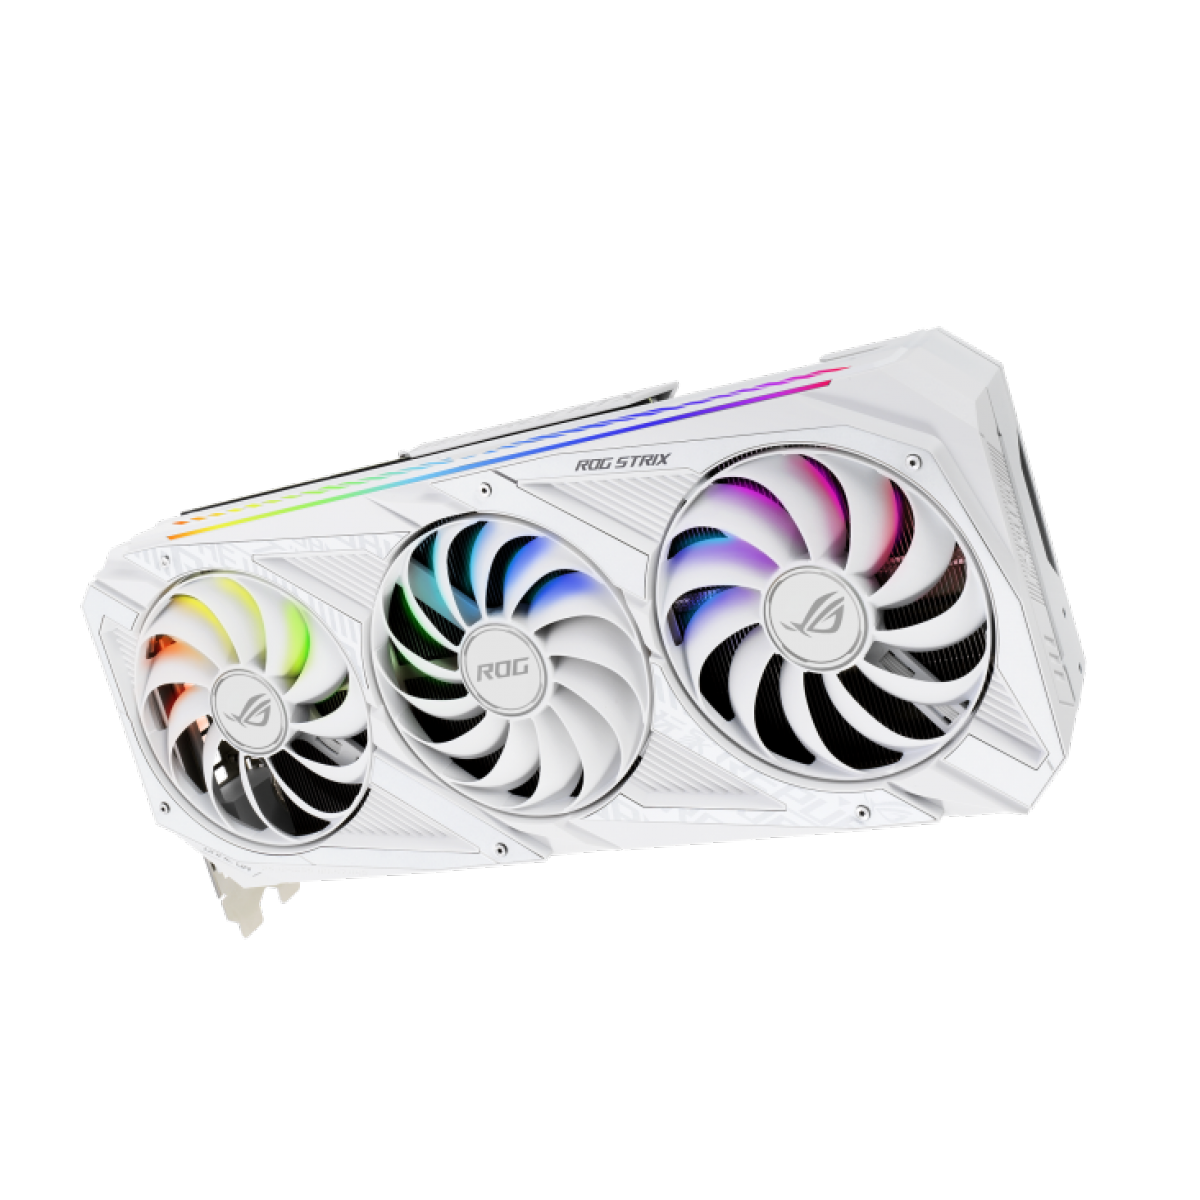 Placa de Vídeo Asus, ROG Strix, Geforce RTX 3080, White Edition, 10GB, GDDR6X, 320bit, ROG-STRIX-RTX3080-10G-WHITE